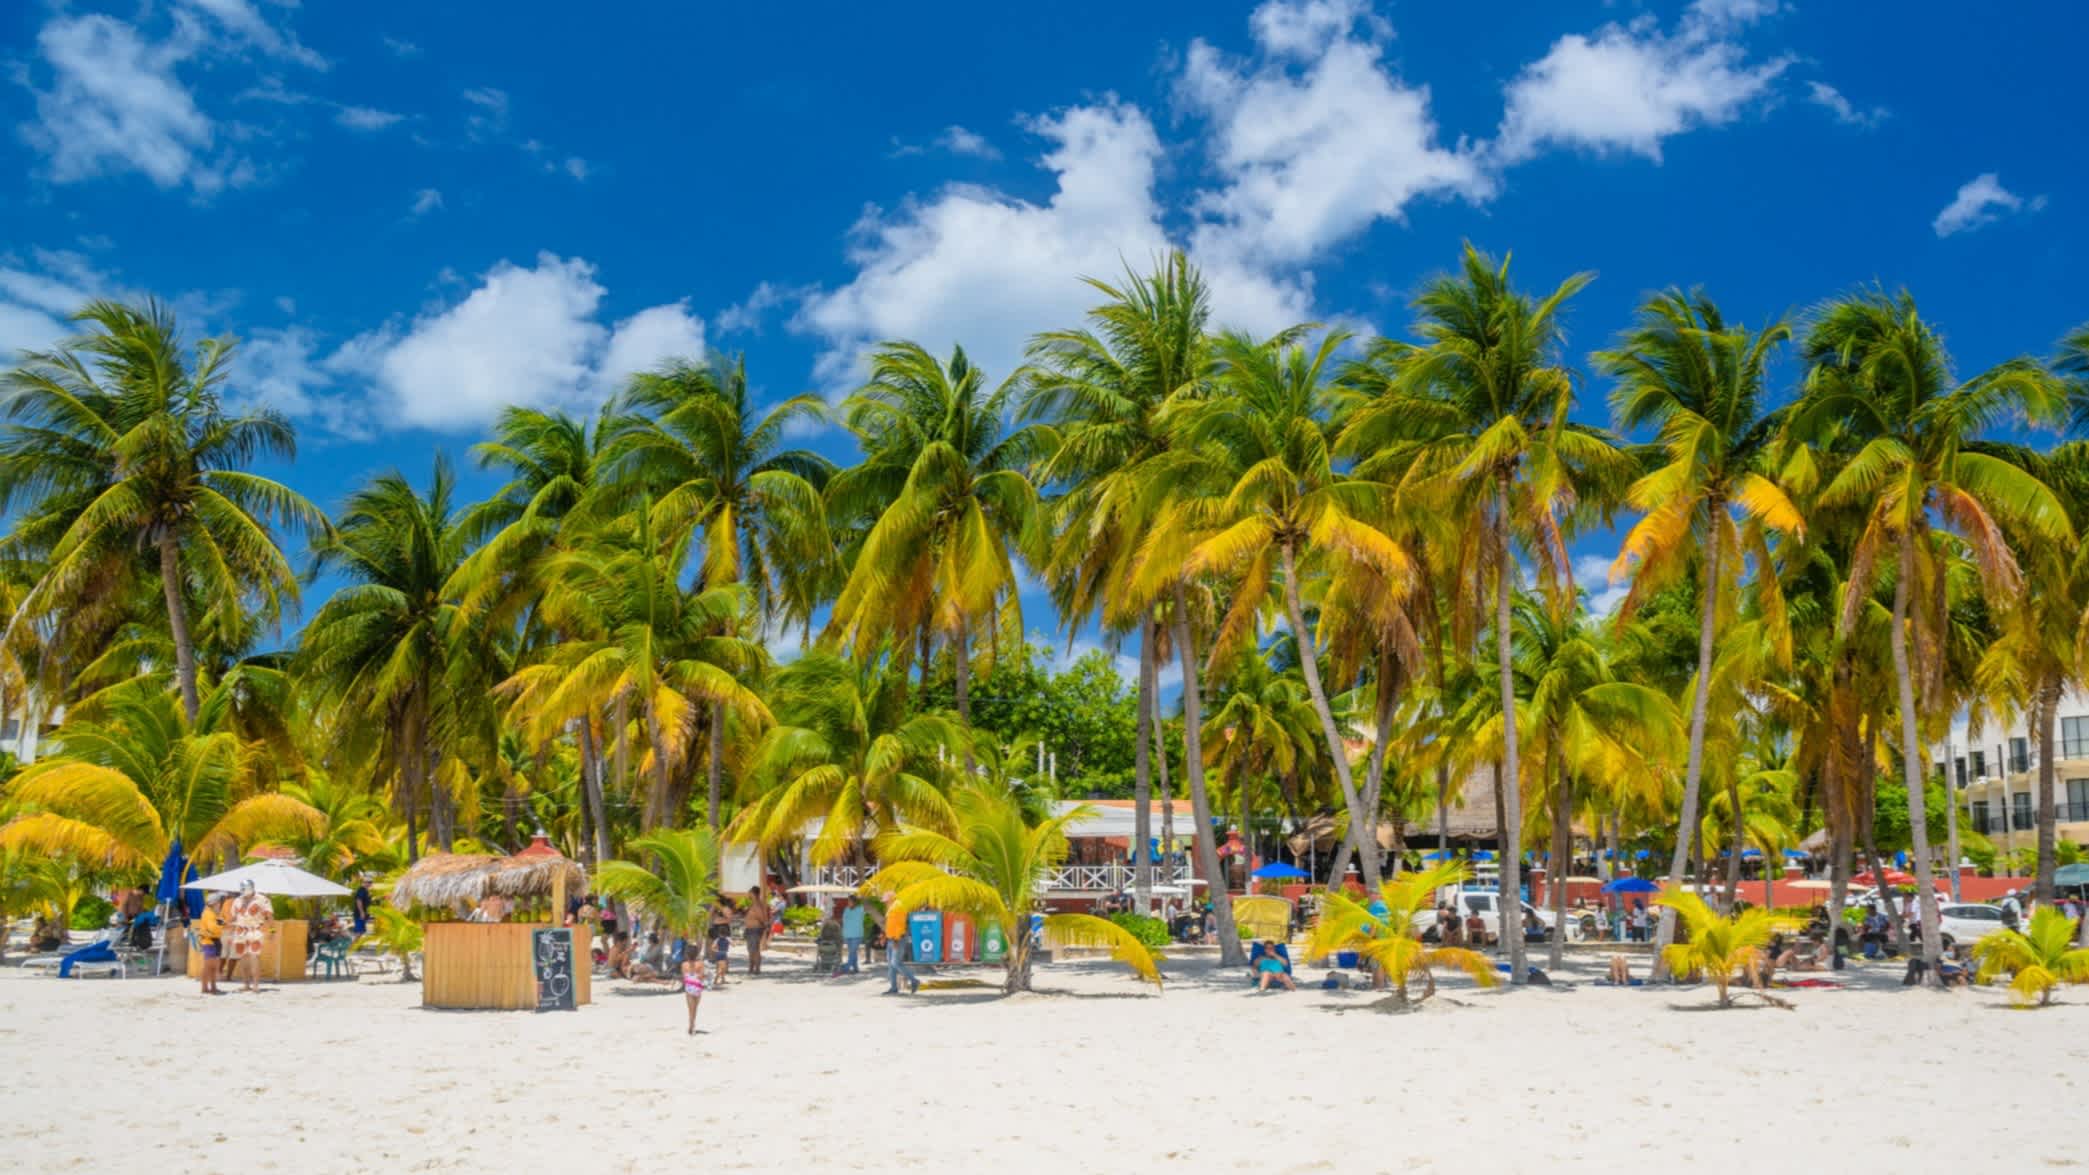 Palmiers sur le sable blanc de la plage d'Isla Mujeres par une journée ensoleillée, à Cancún, au Yucatán, au Mexique.

